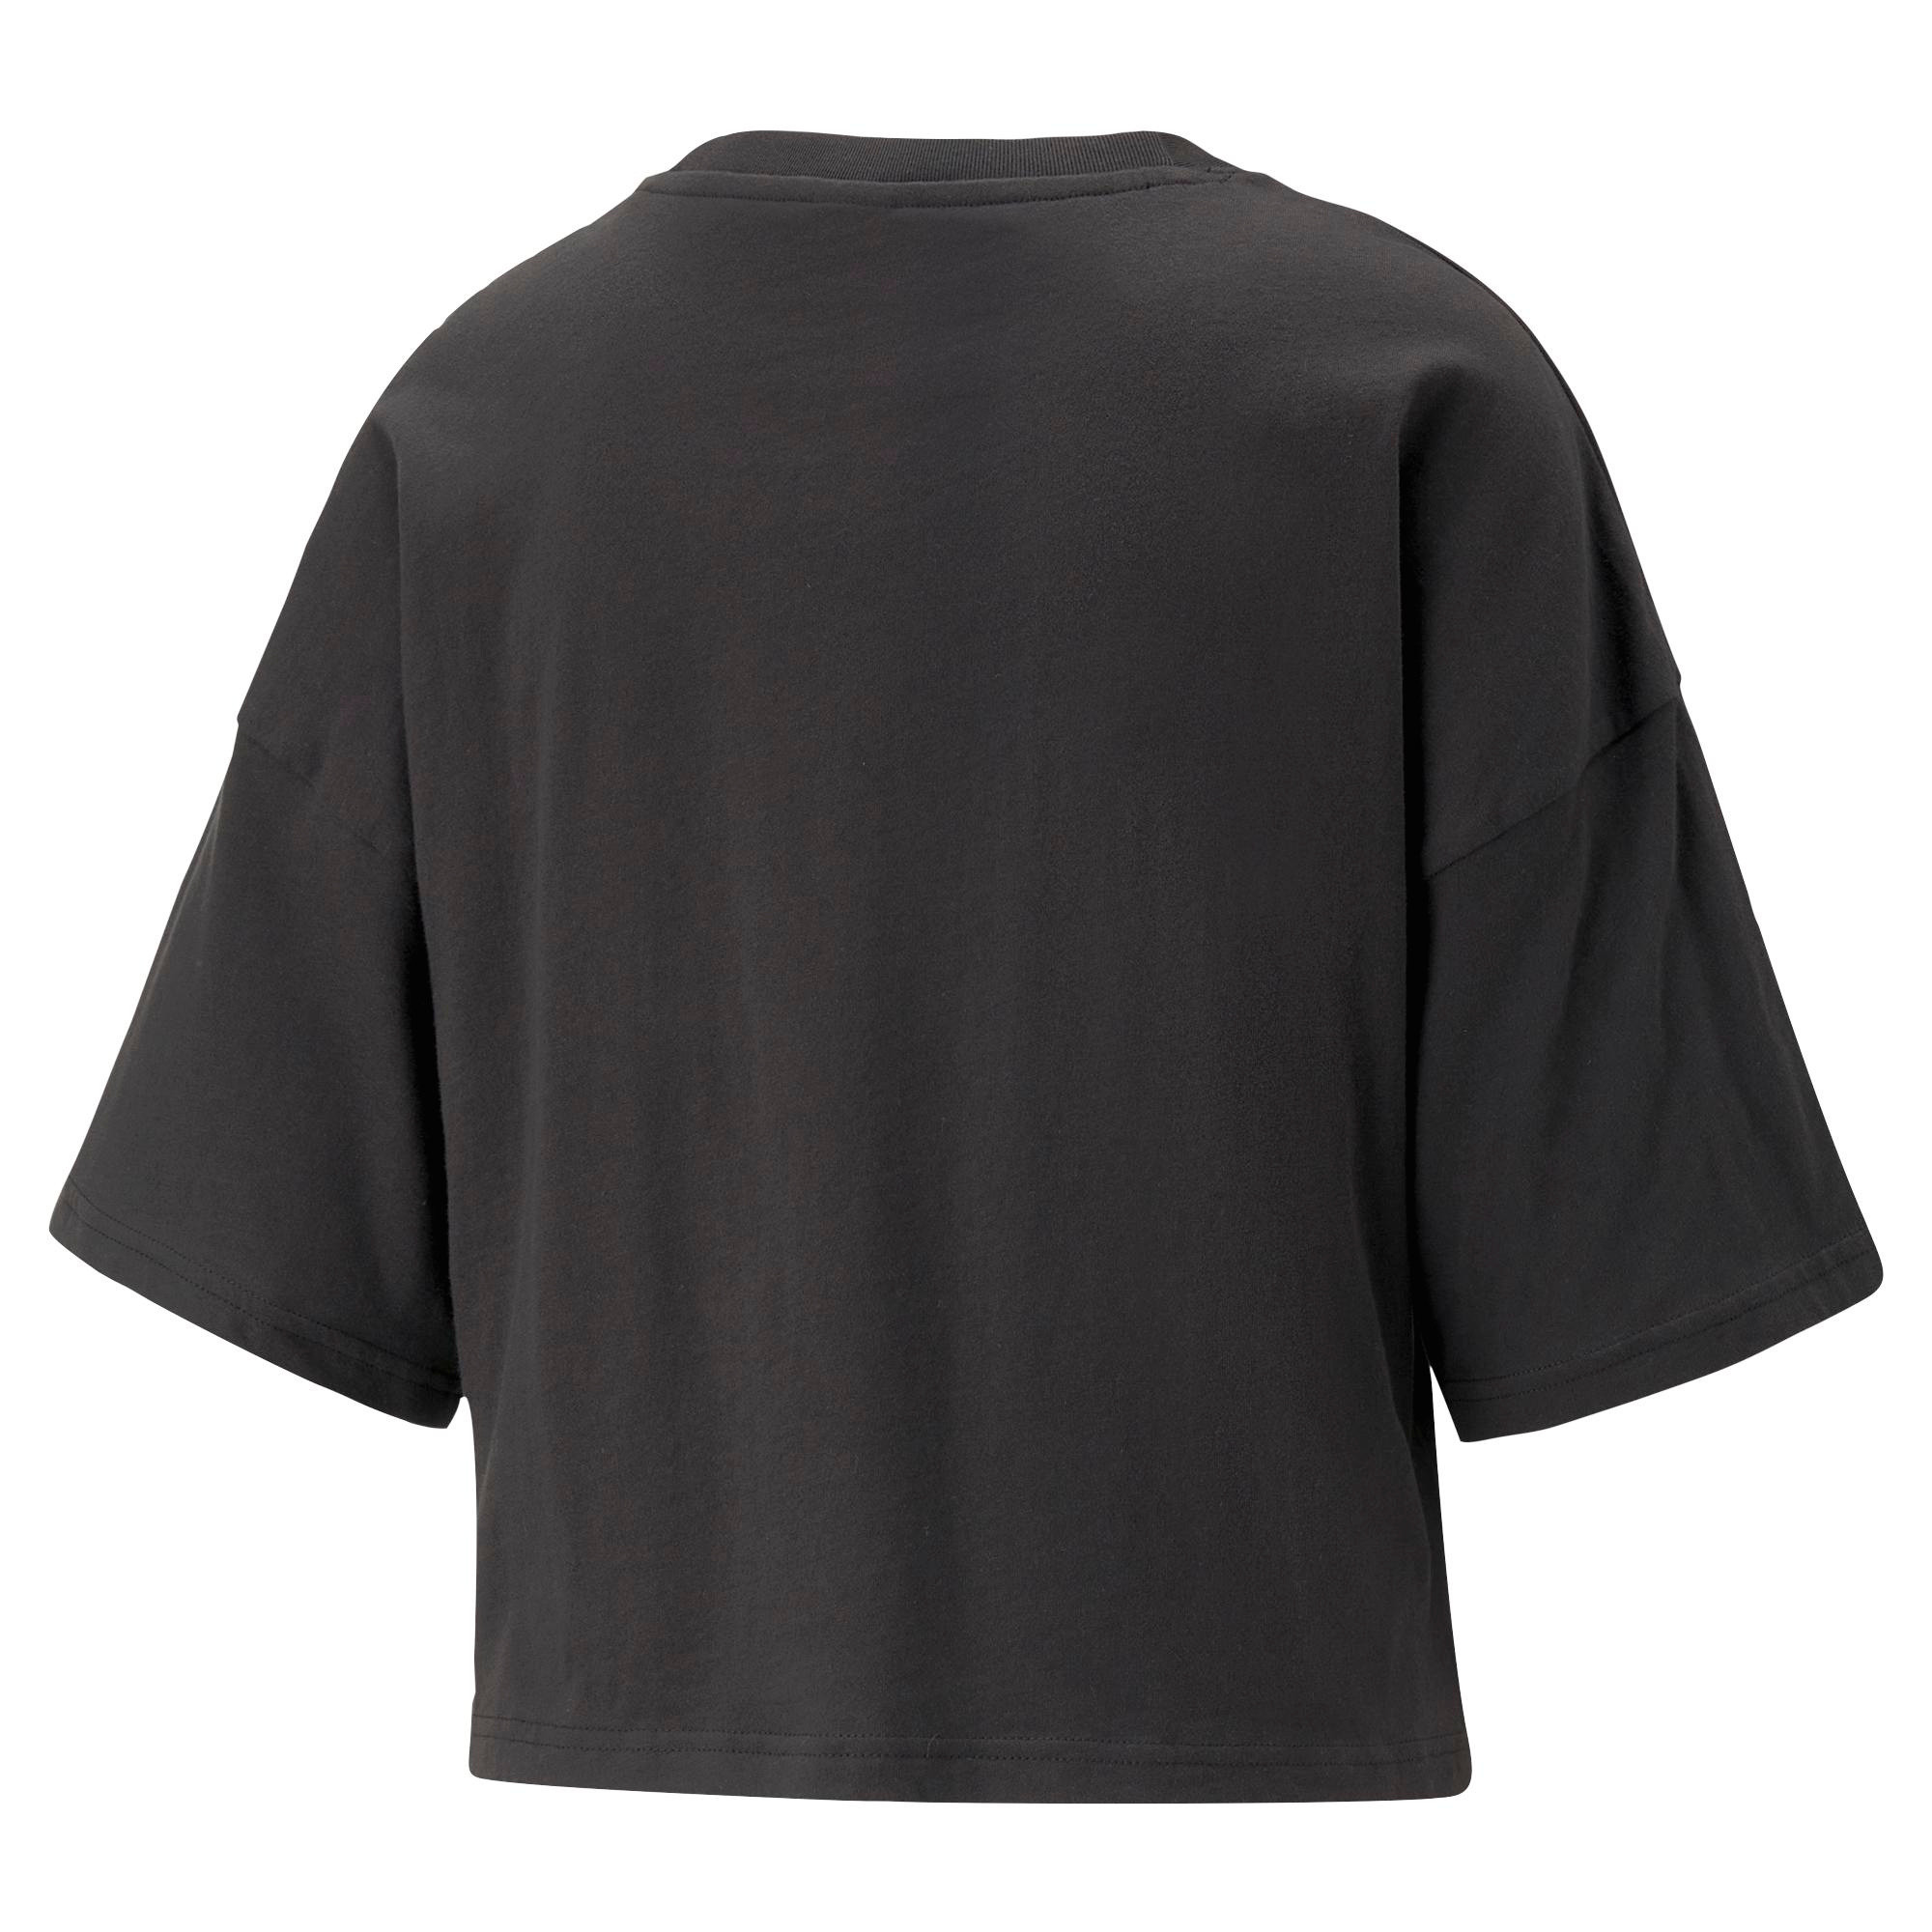 Puma - Oversized cotton T-shirt, Black, large image number 1